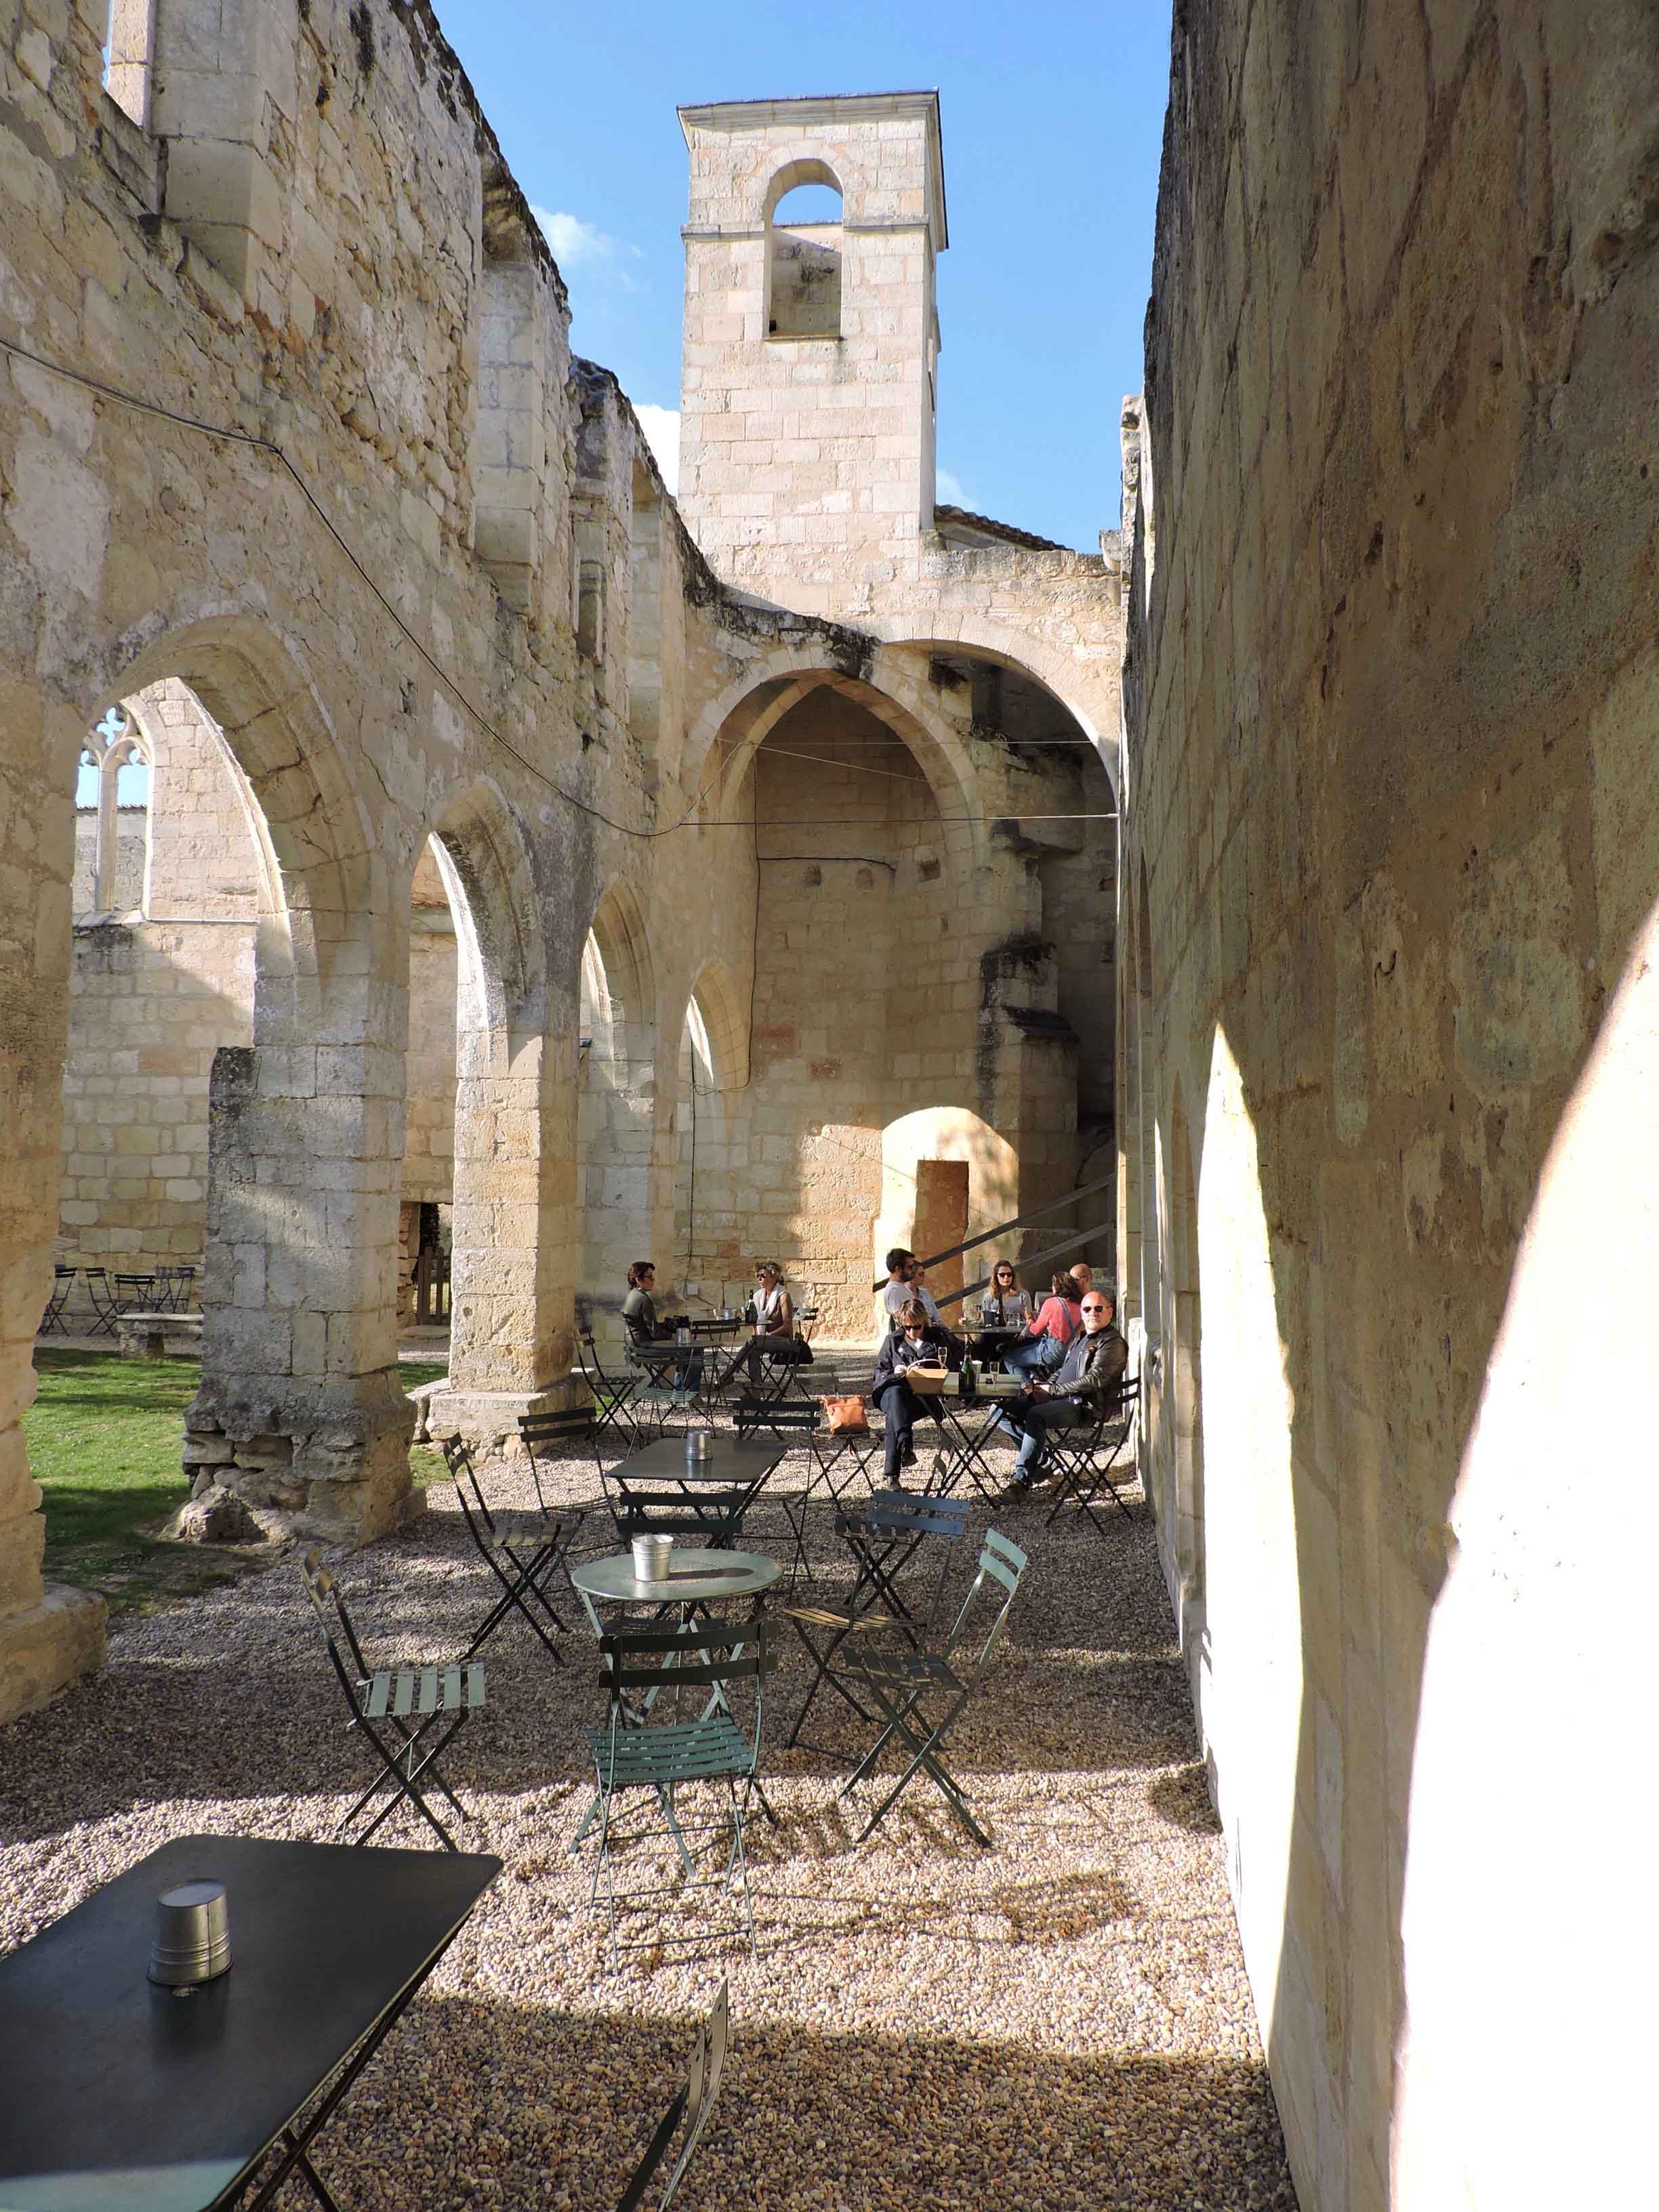 St Emilion: dove bere un buon vino francese all'interno di una vecchia chiesa a Les Cordeliers